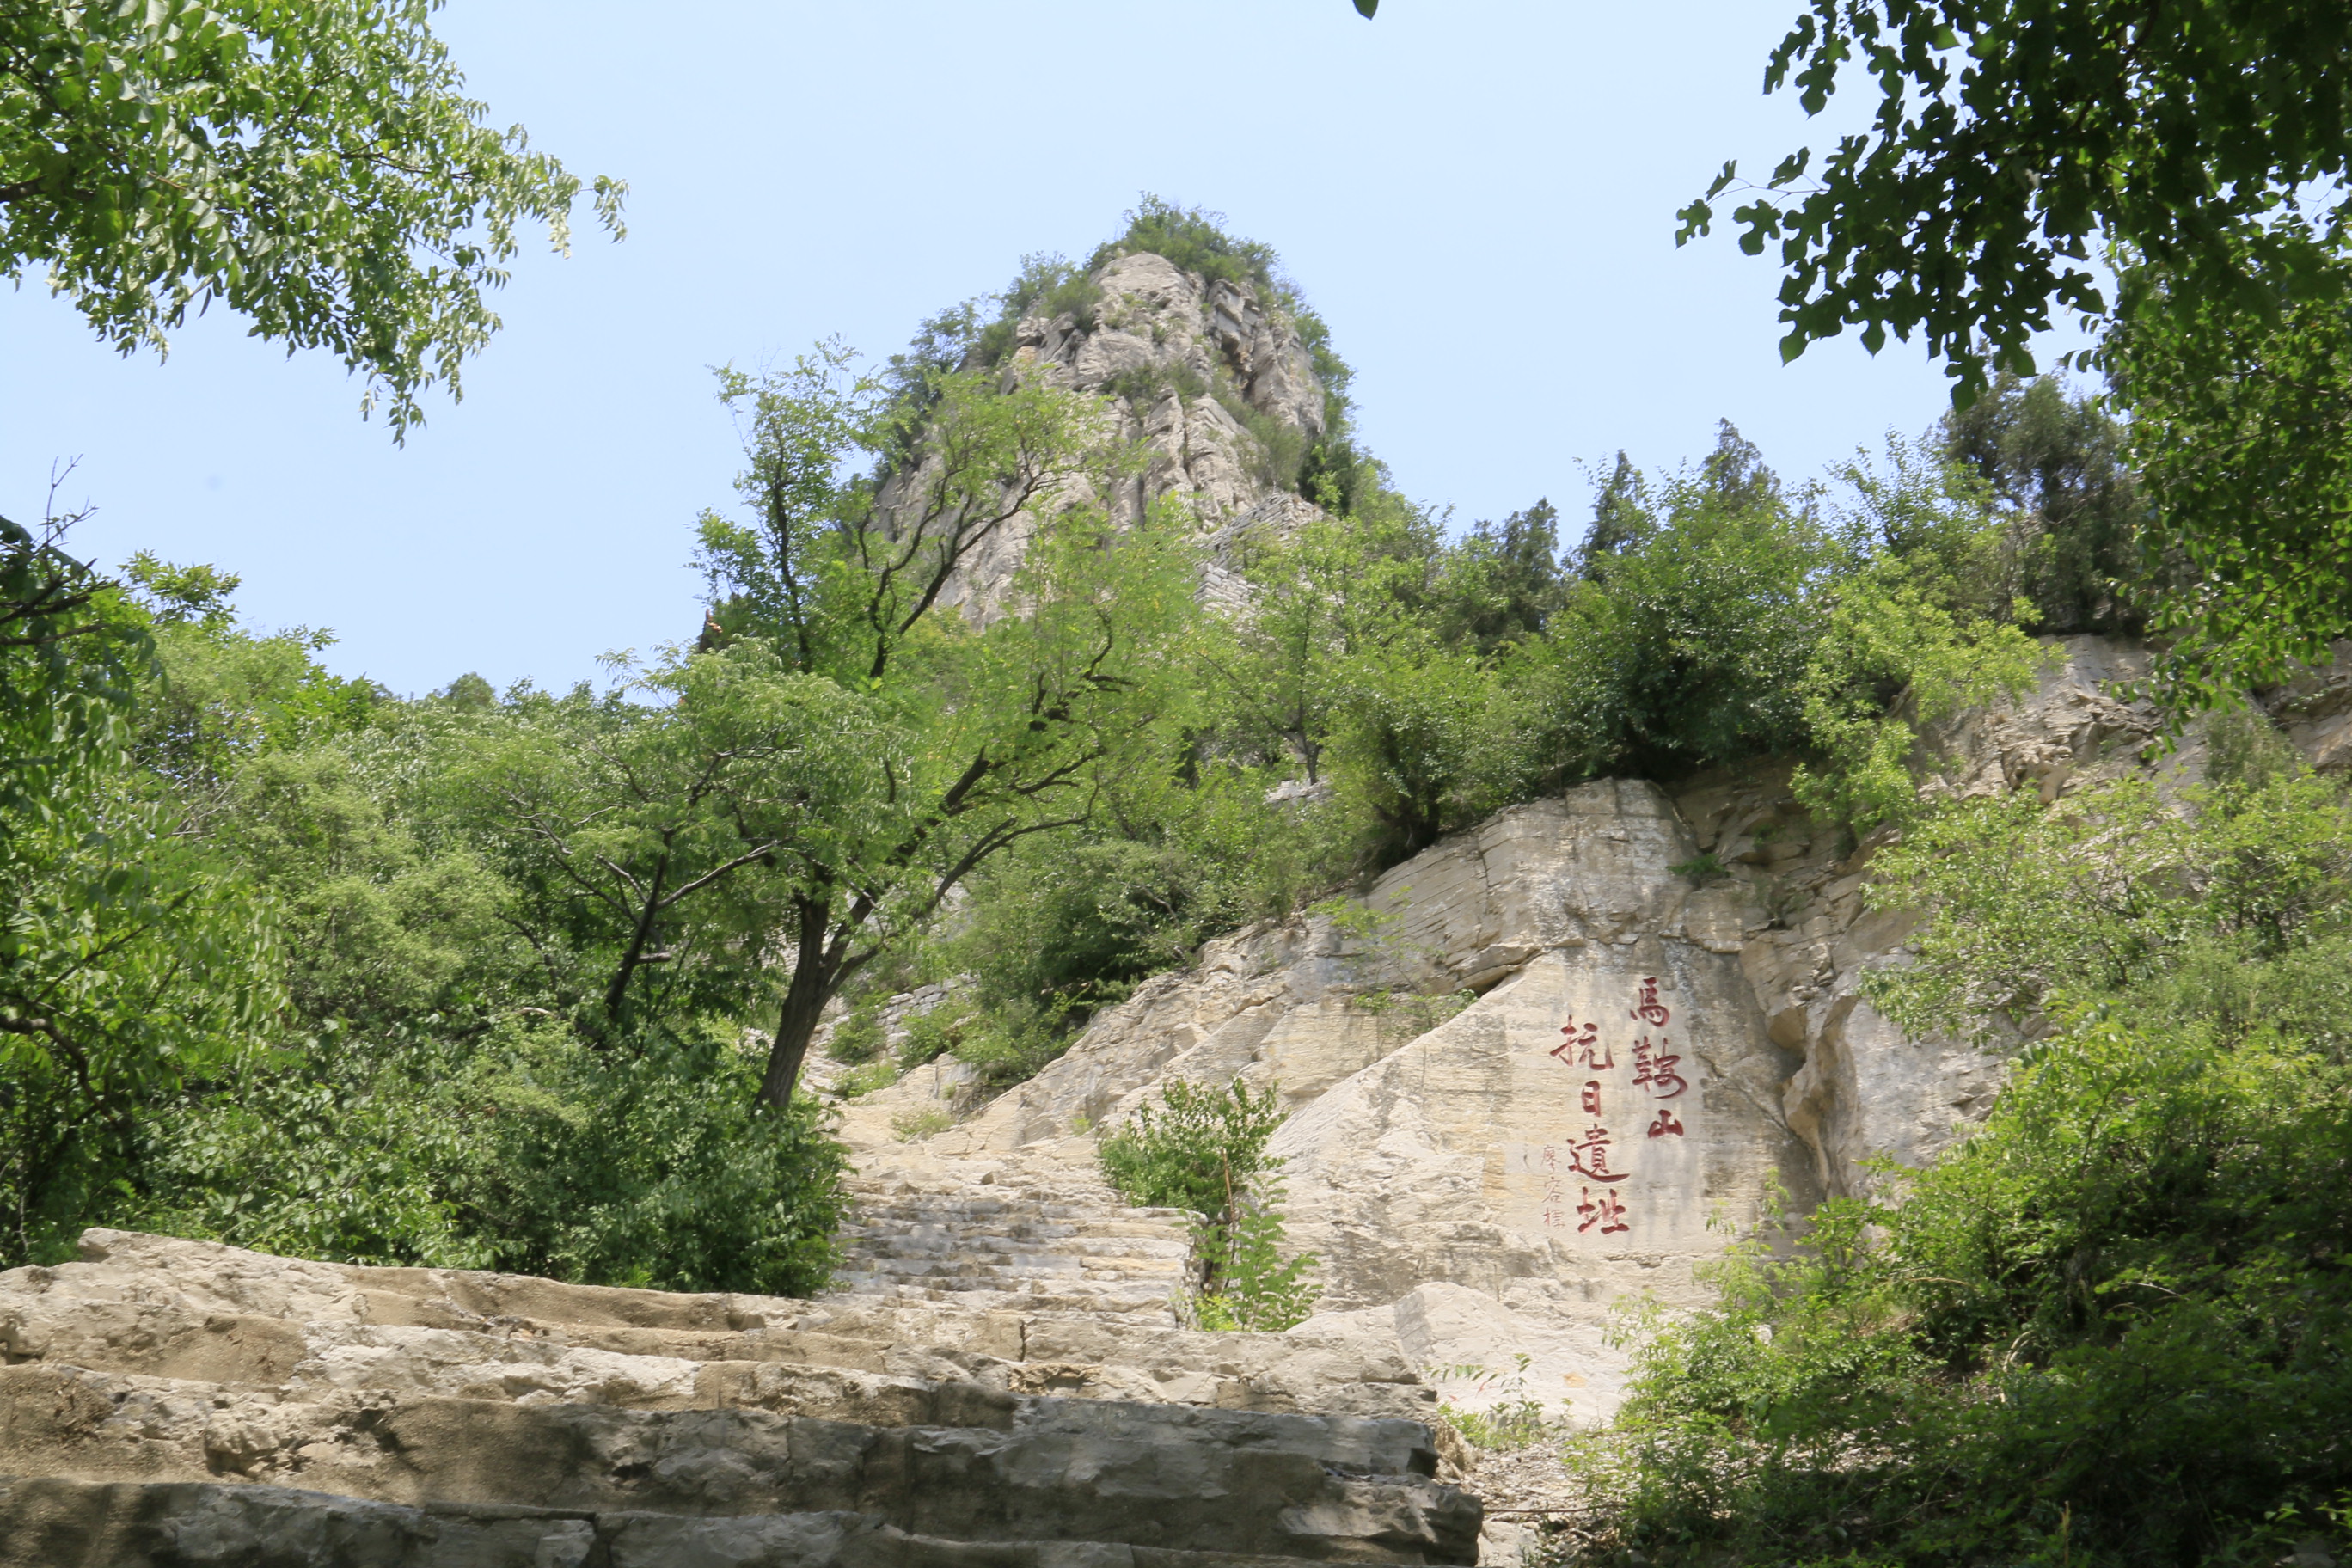 淄博市的马鞍山位于淄川区淄河镇,因为山峰奇险形若马鞍而得名